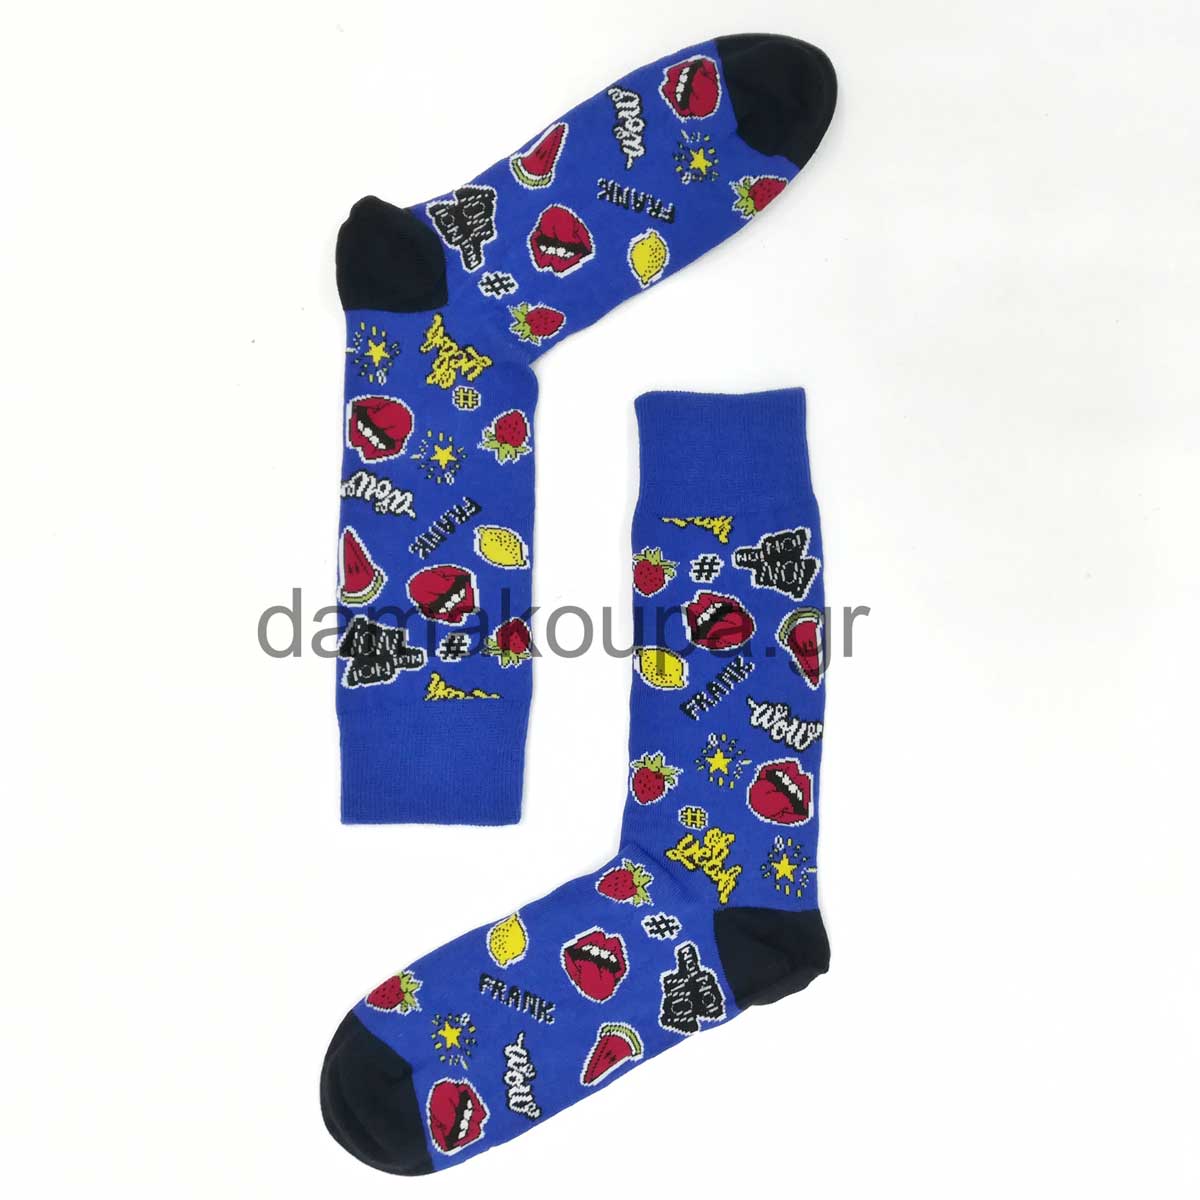 Ανδρικές κάλτσες με χαρούμενα σχέδια